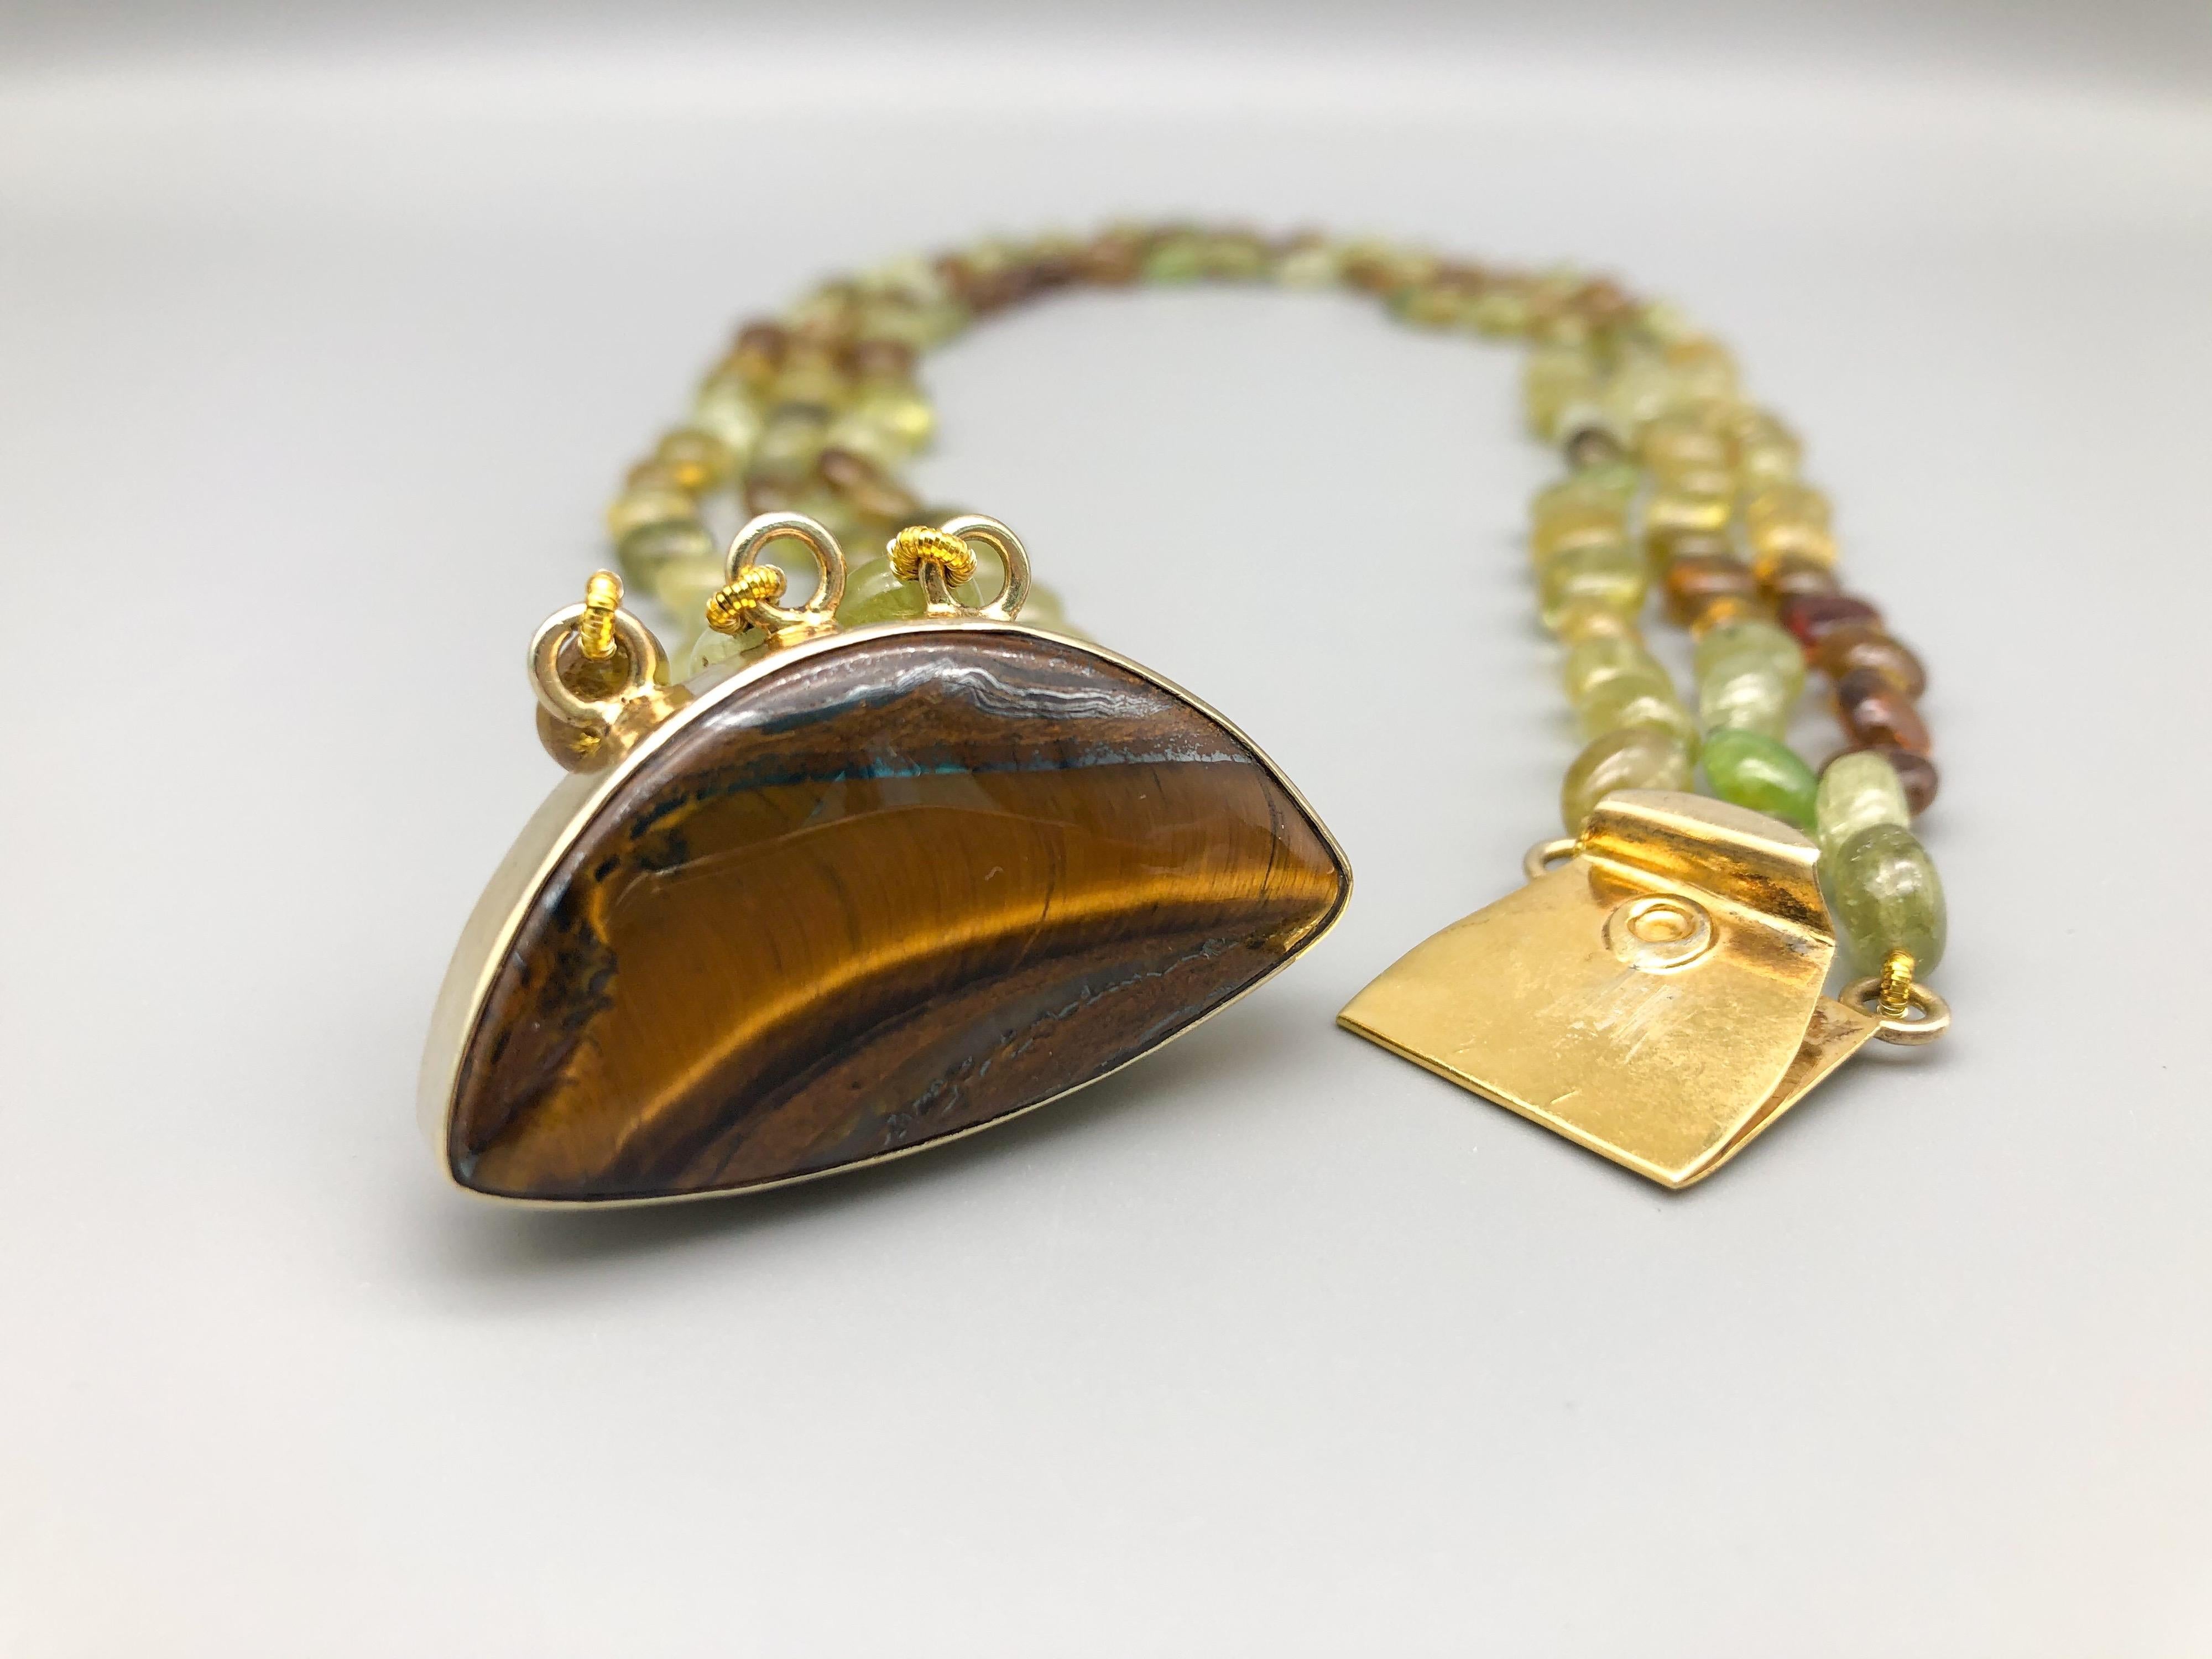 A.Jeschel 3 Strand Green Garnet necklace  (Grossularite) 4